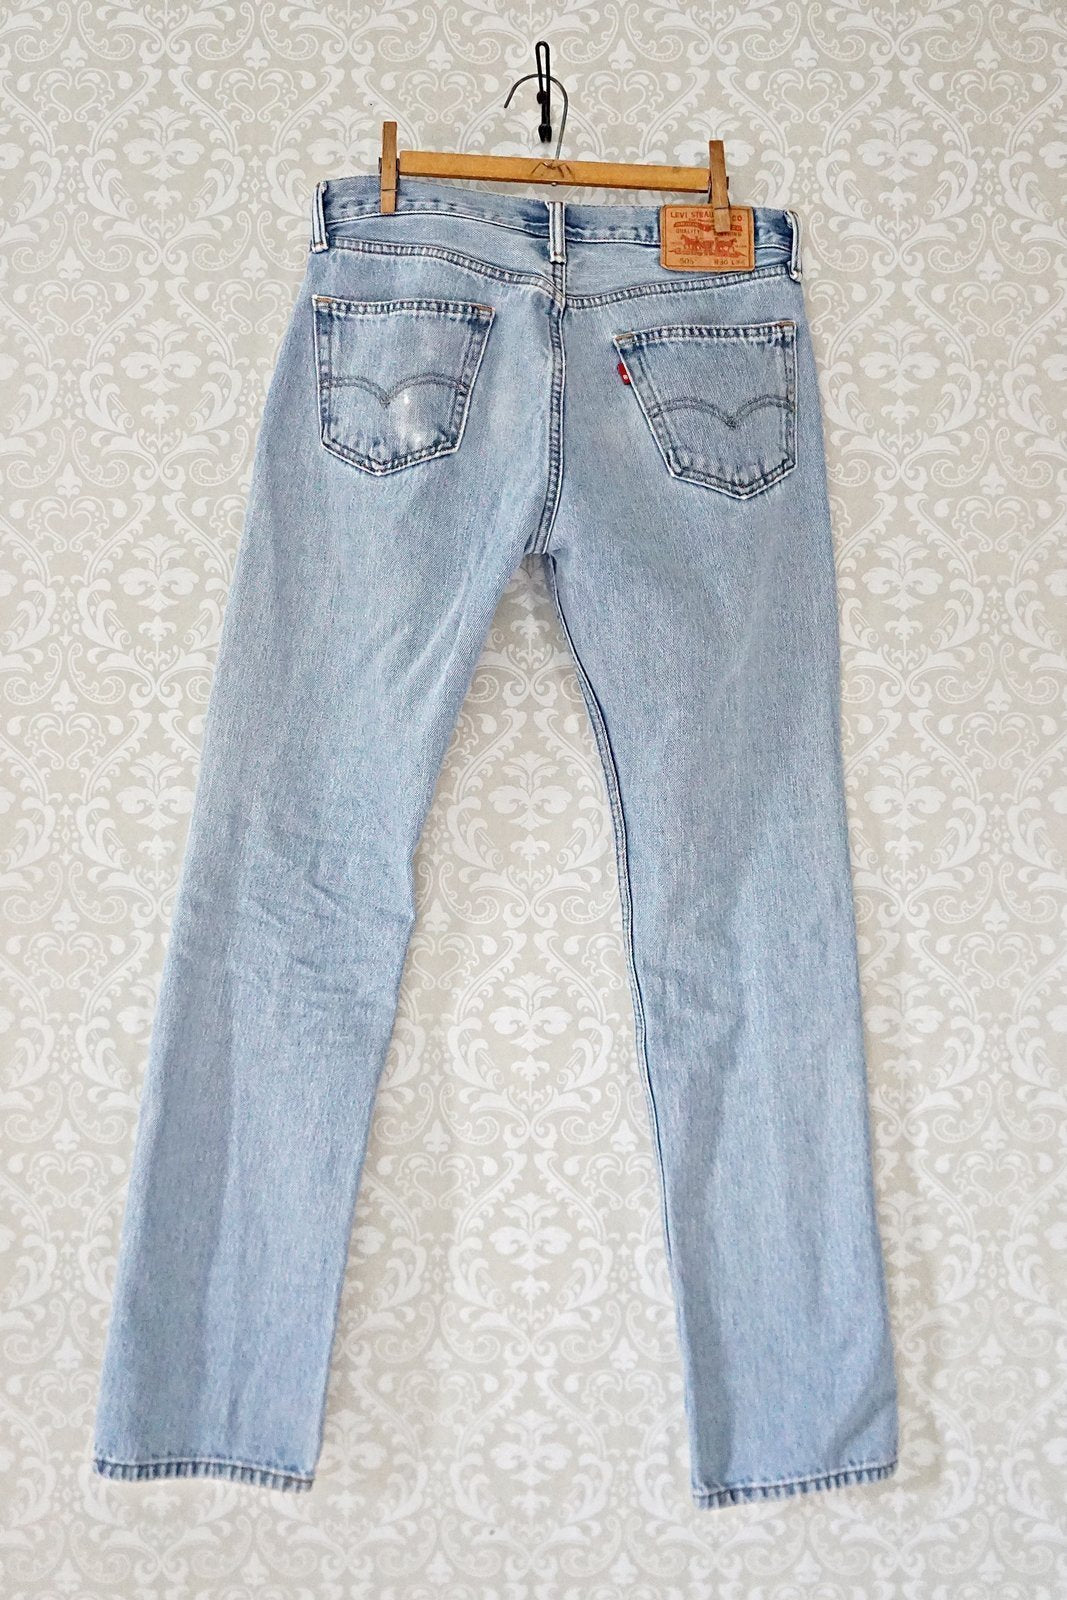 Vintage Levi's 505 Jeans - 33" Waist-closiTherapi | vinTage